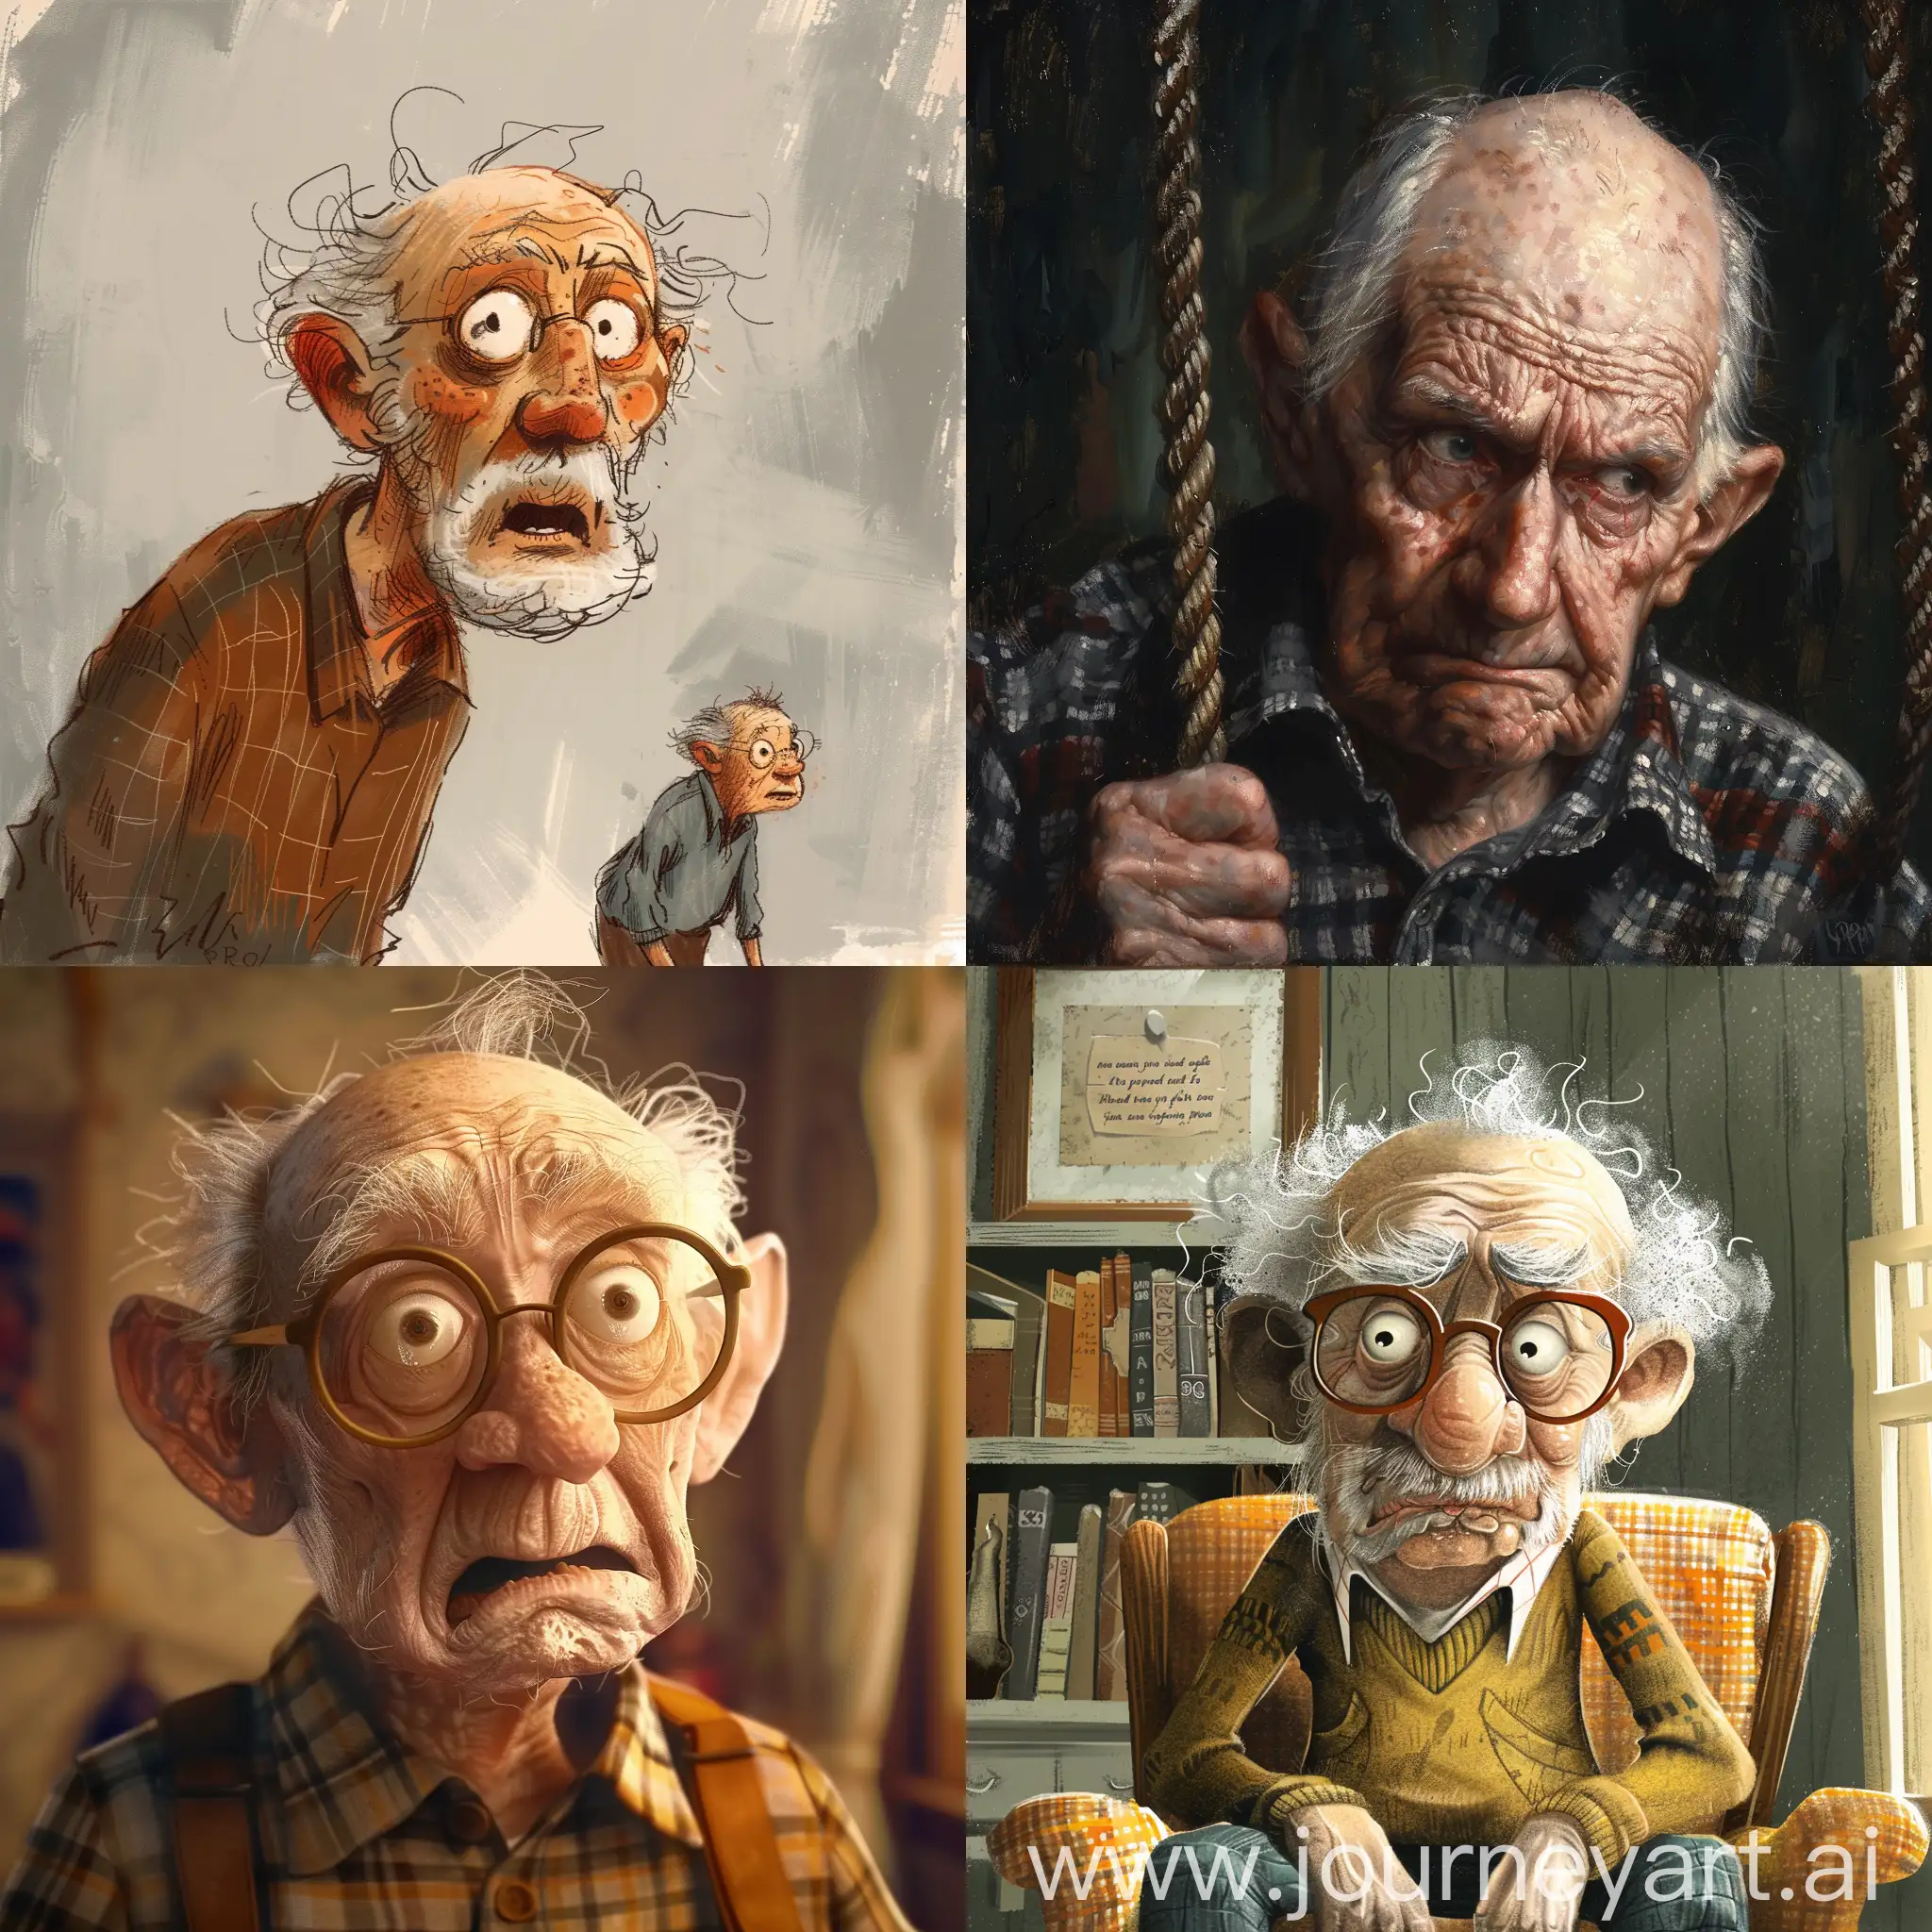 Grandpa-in-Deep-Trouble-AI-Art-A-Scene-of-Peril-and-Rescue